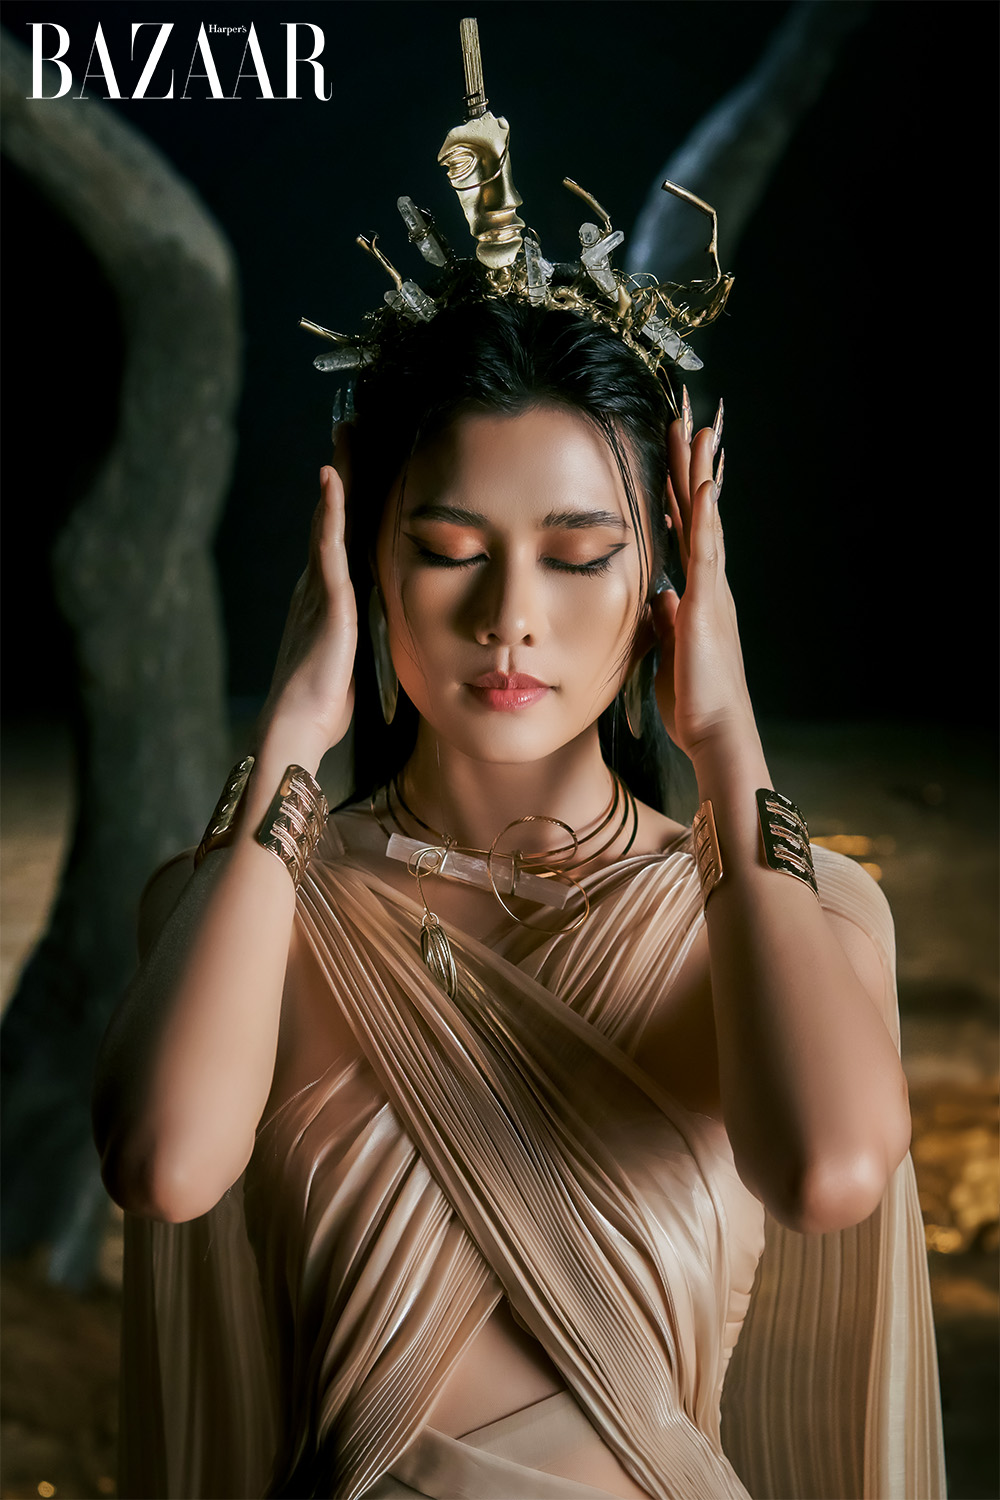 Harper's Bazaar_Ca sĩ Phúc Anh ra mắt MV Thena đậm chất cinematic_09